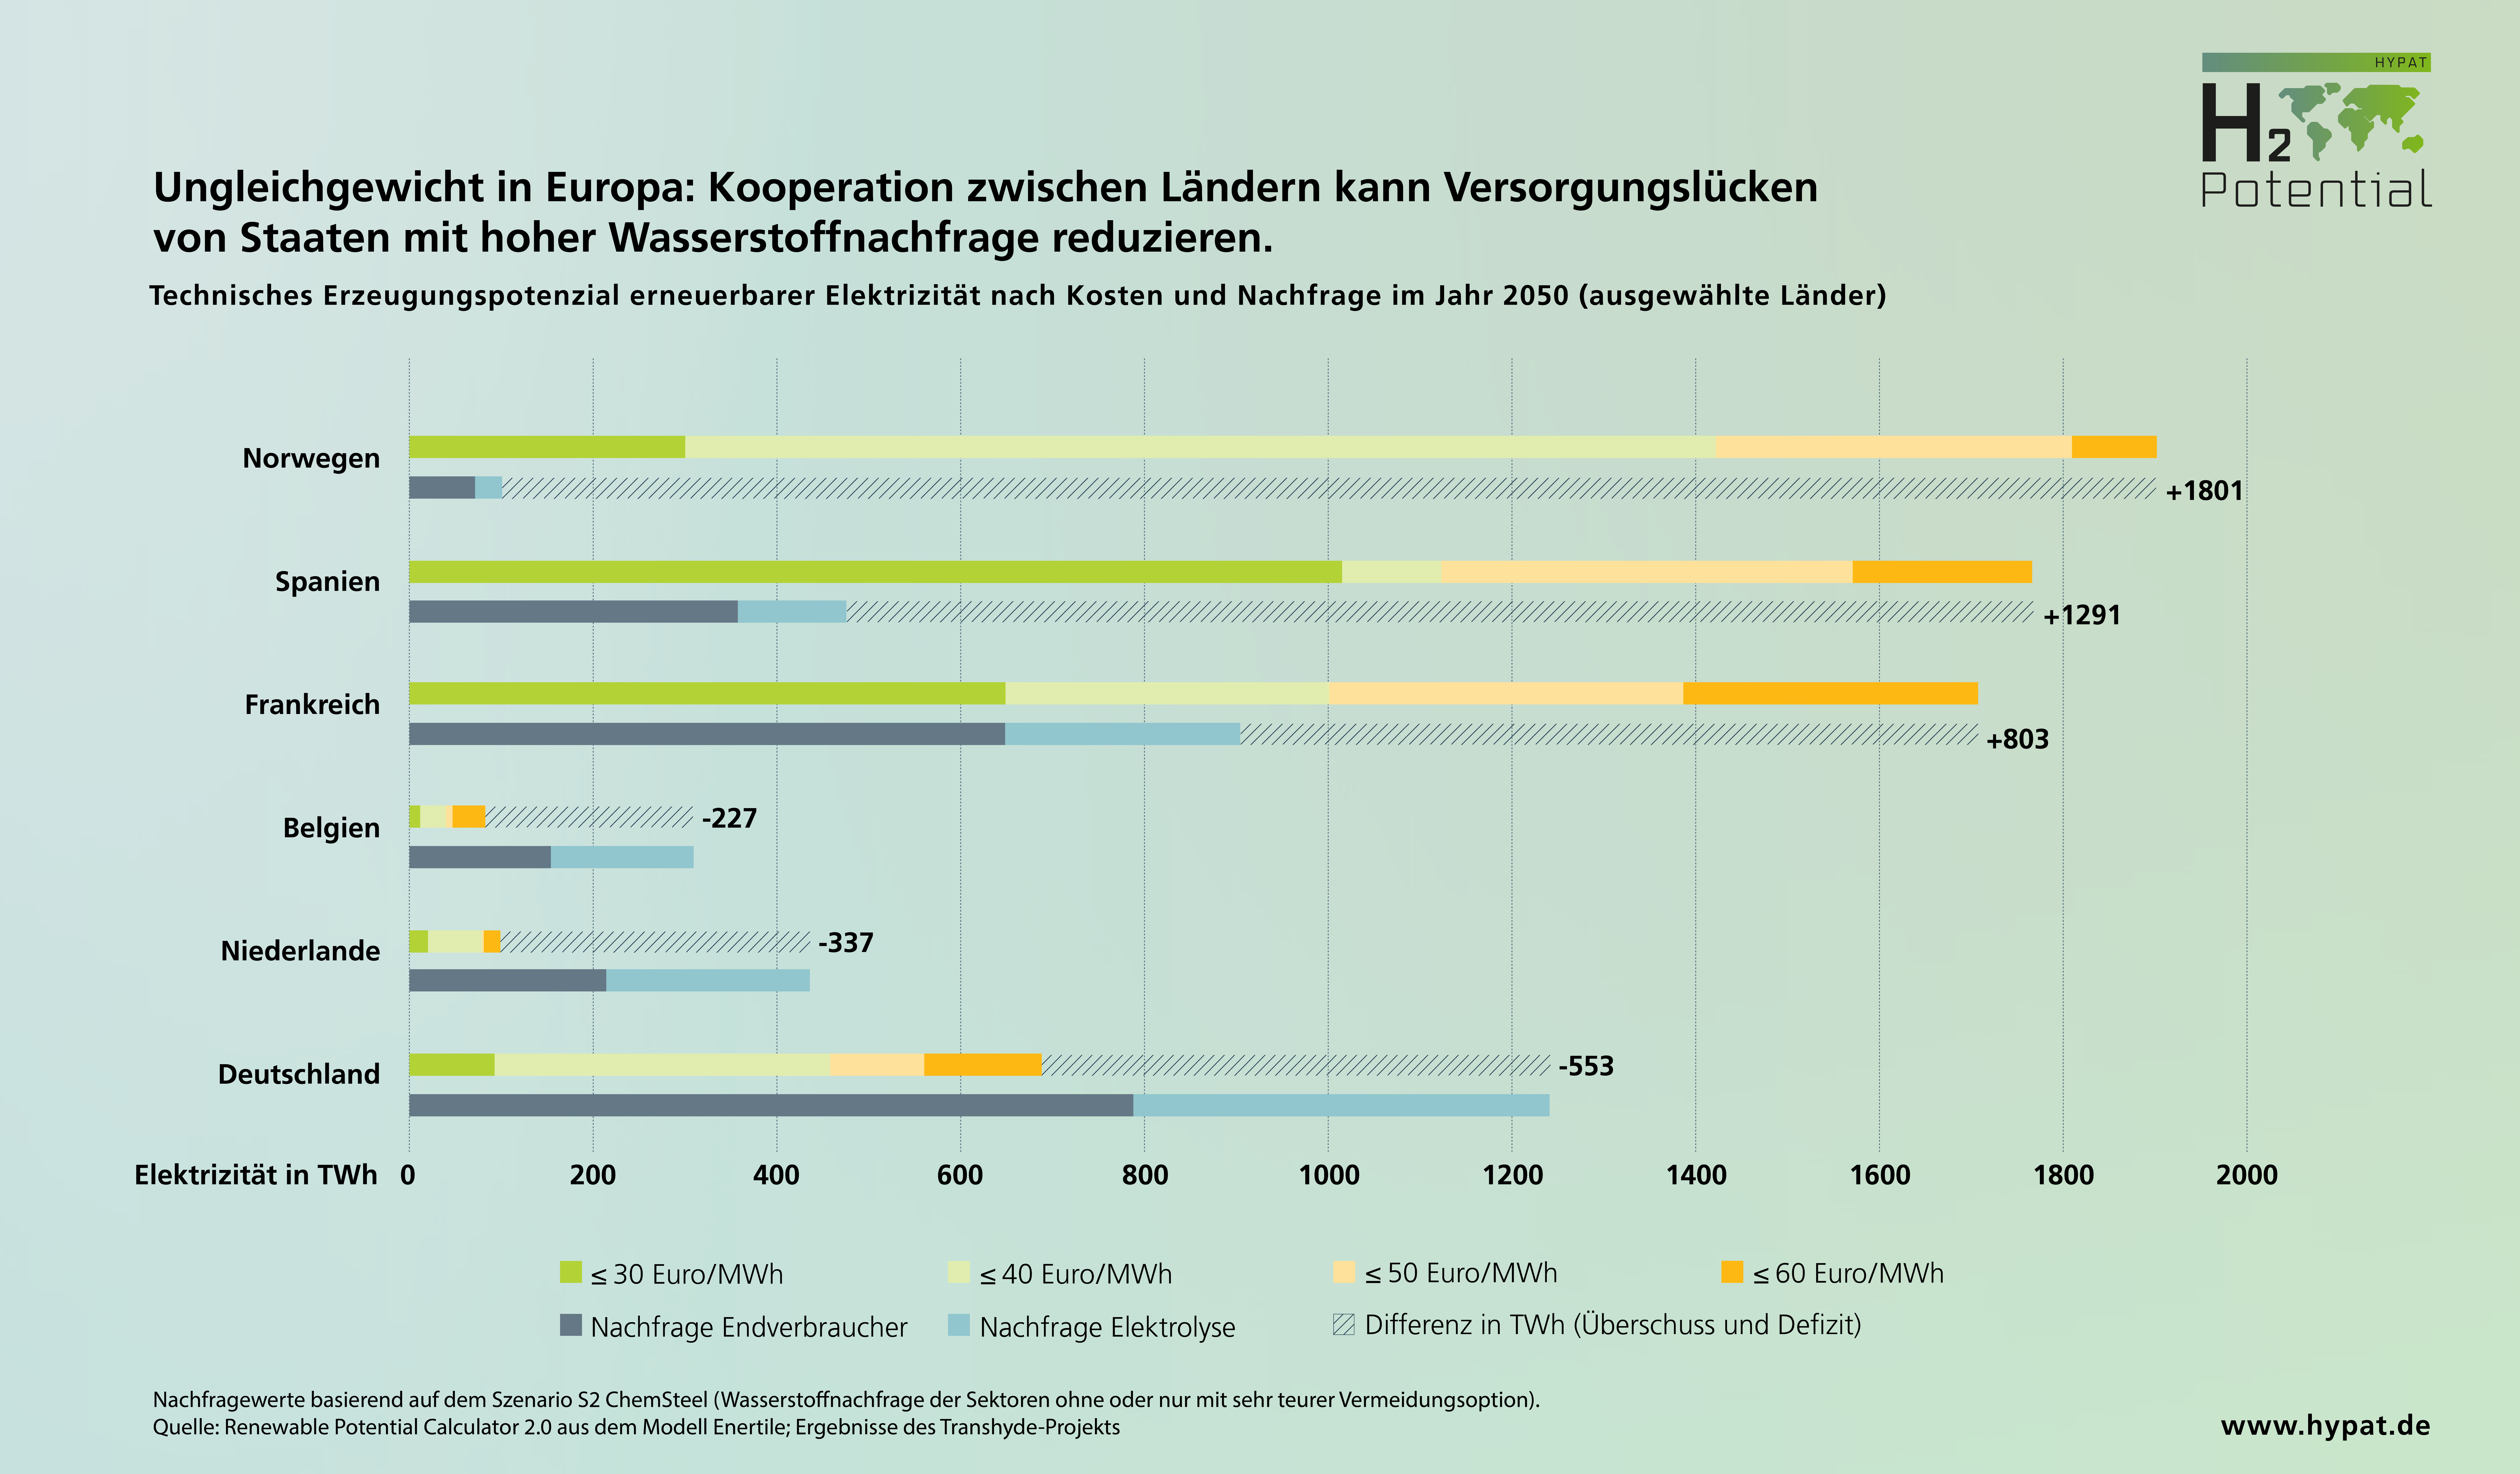 Technisches Erzeugungspotenzial erneuerbarer Elektrizität nach Kosten und Nachfrage im Jahr 2050 (ausgewählte Länder).